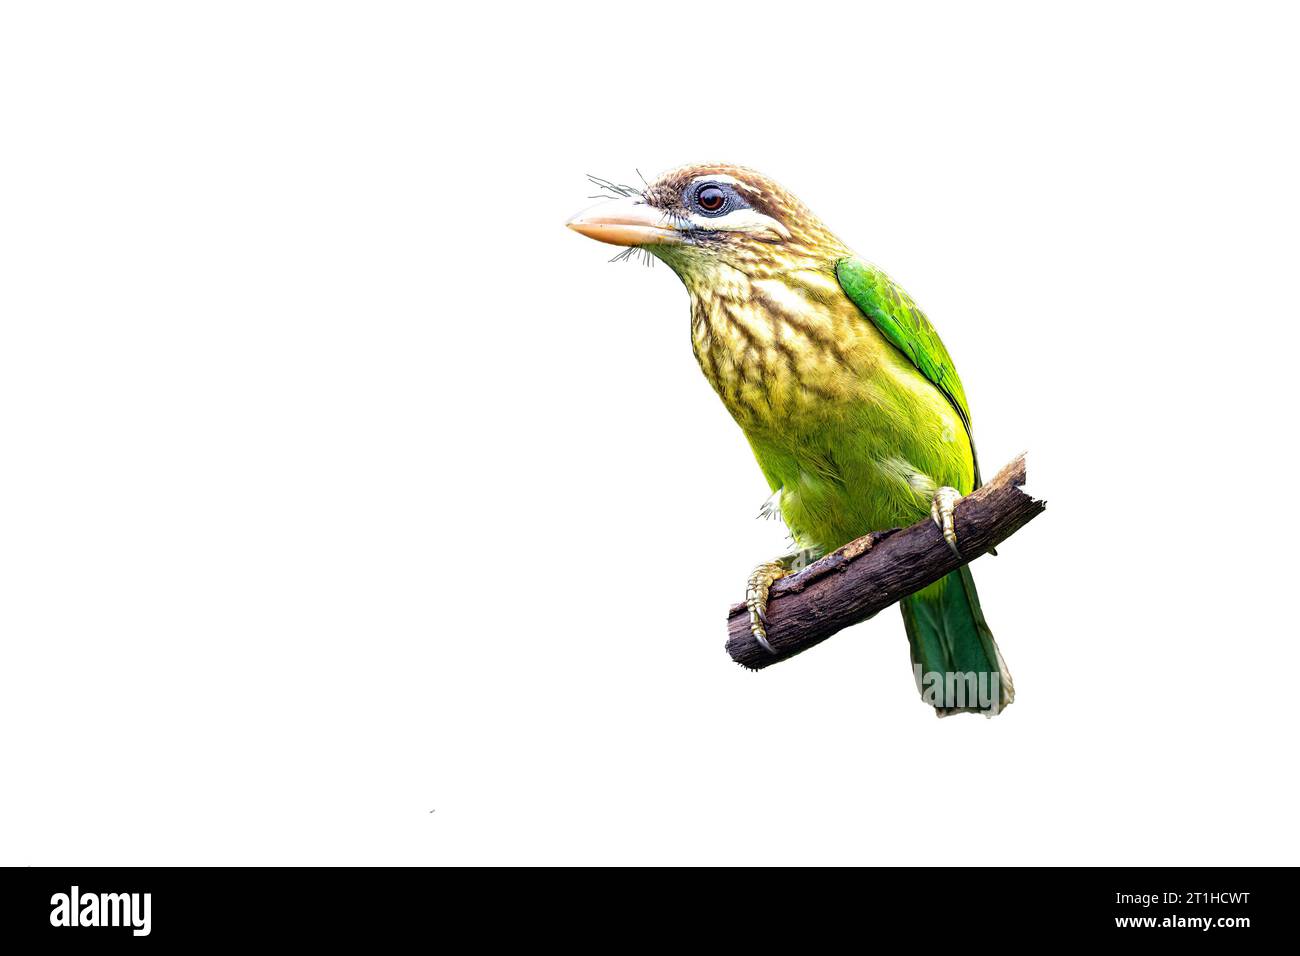 El Barbet de mejilla blanca o granate verde pequeño (Psilopogon viridis) es un barbet verde que solo se encuentra en el sur de la India. Observe la cabeza y el carácter marrón oscuro Foto de stock